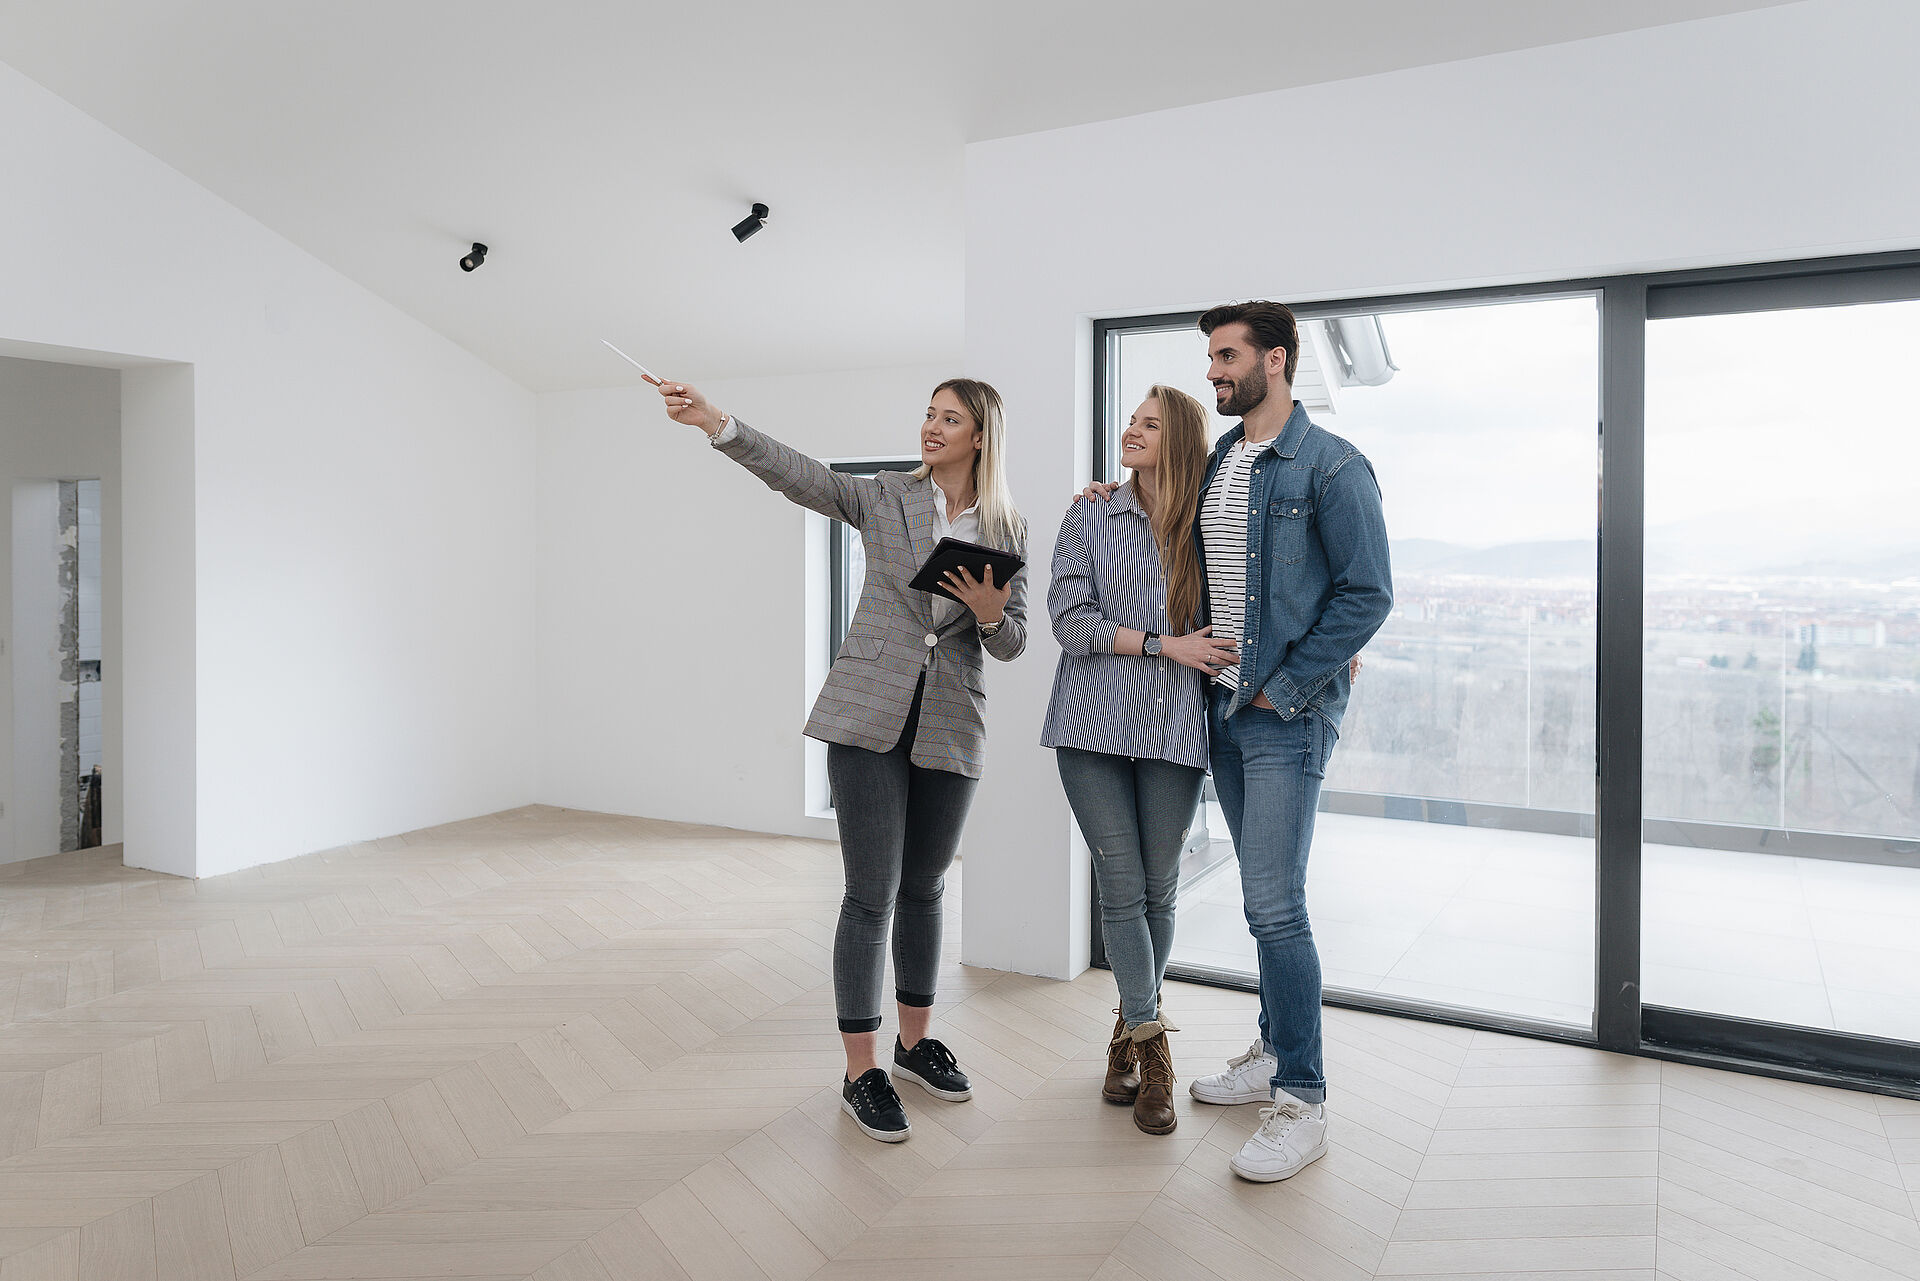 Eine Maklerin zeigt einem jungen Paar auf einem Tablet Daten zum Objekt. Alle drei stehen im Eingangsbereich einer leeren Wohnung.